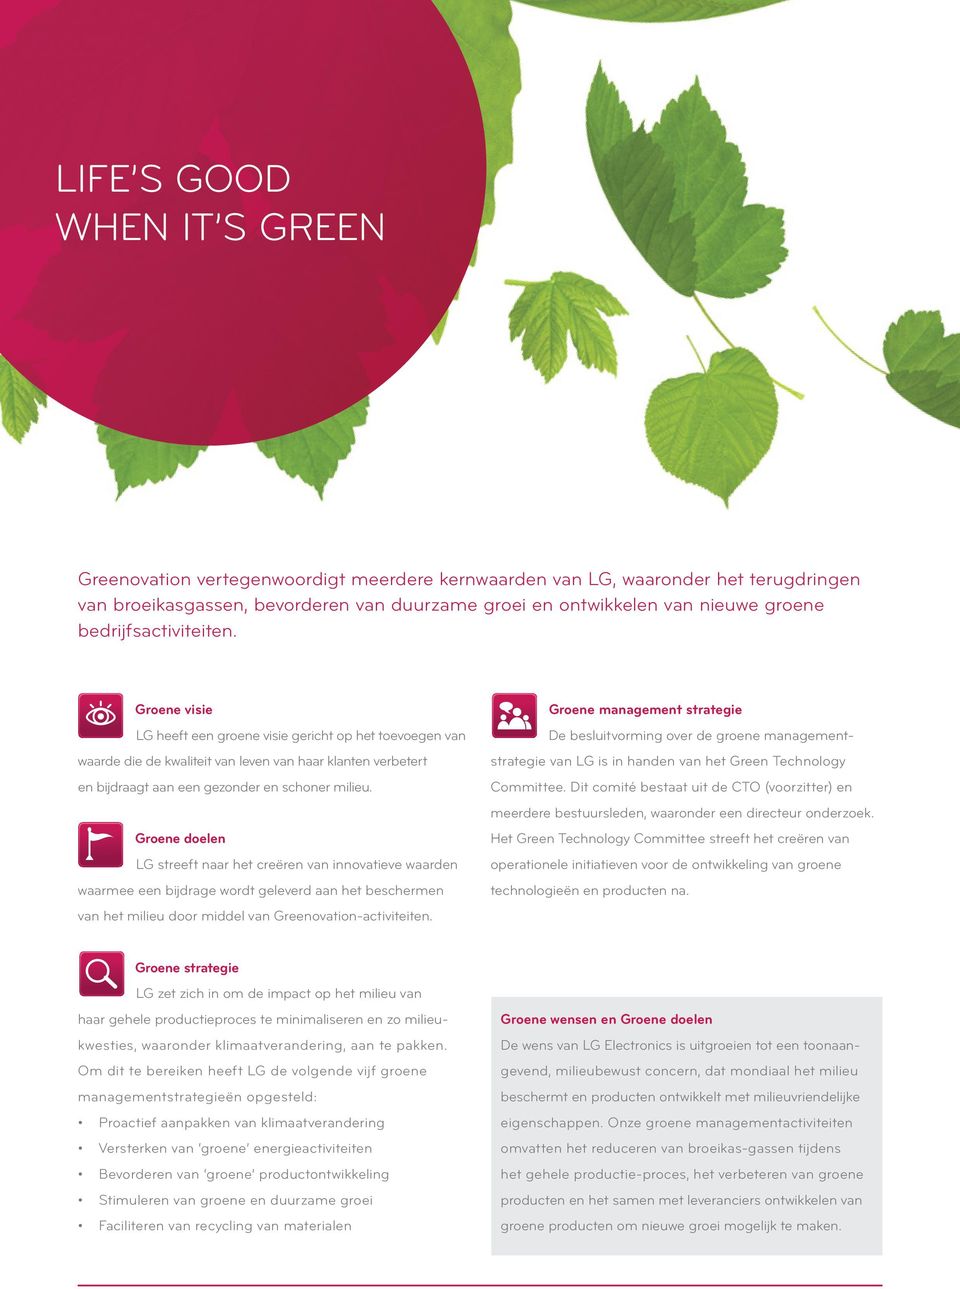 co2 co2 Groene doelen LG streeft naar het creëren van innovatieve waarden waarmee een bijdrage wordt geleverd aan het beschermen van het milieu door middel van Greenovation-activiteiten.